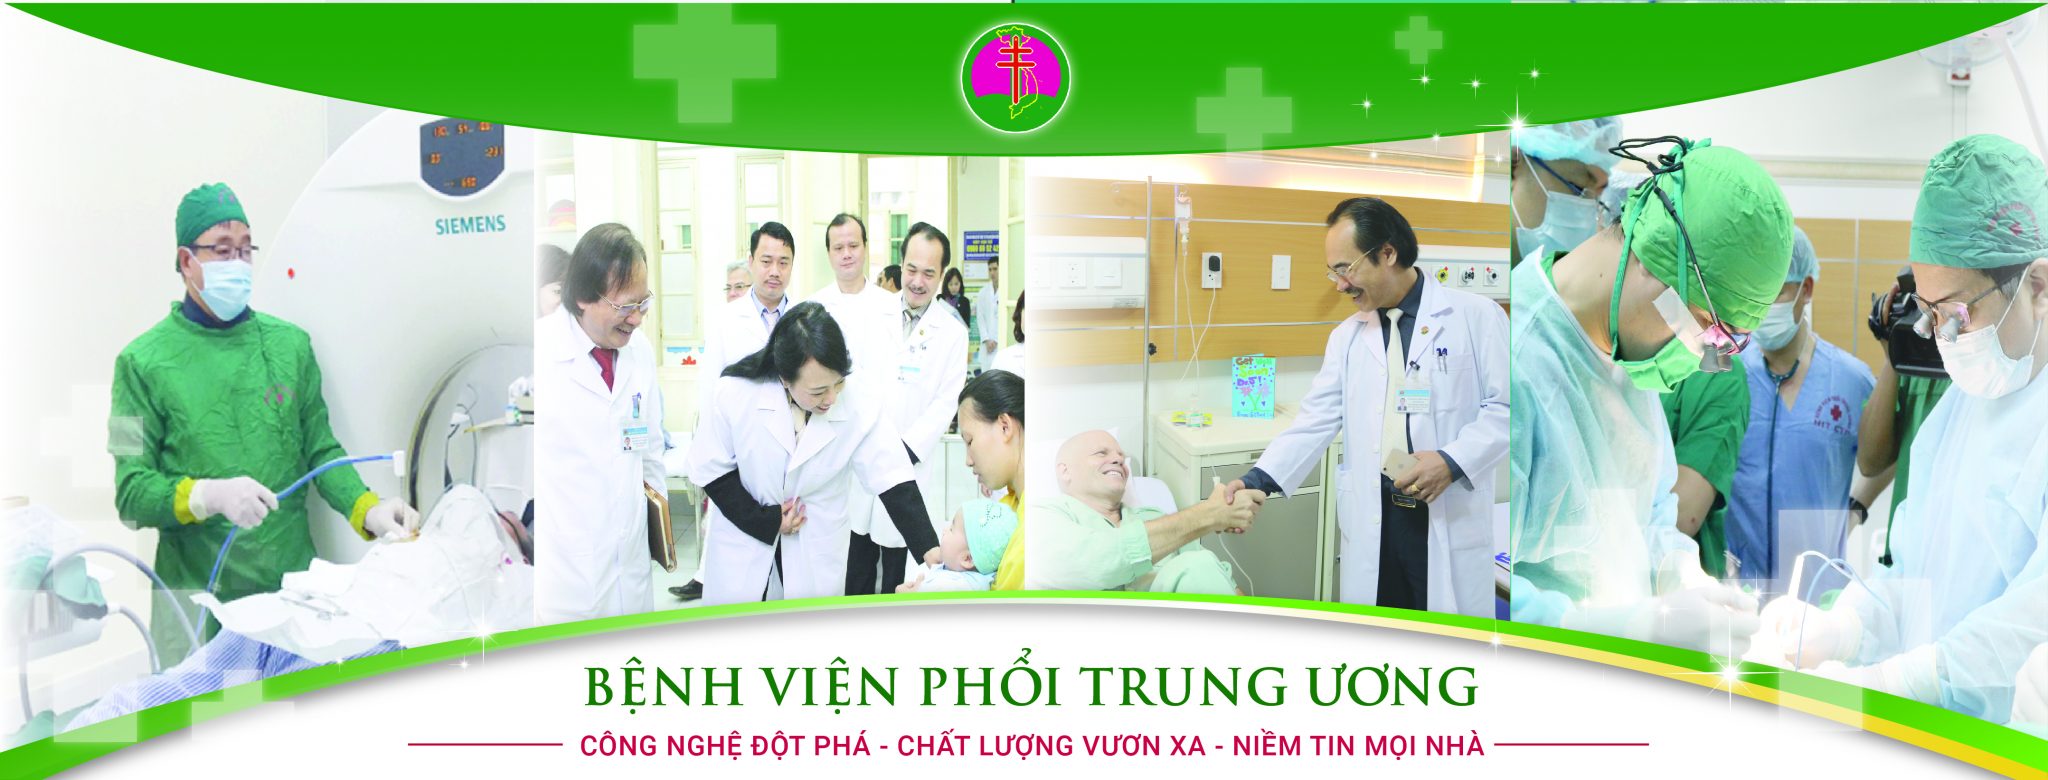 địa chỉ khám phổi tốt ở Hà Nội- Khoa Hô hấp – Bệnh viện Phổi Trung ương